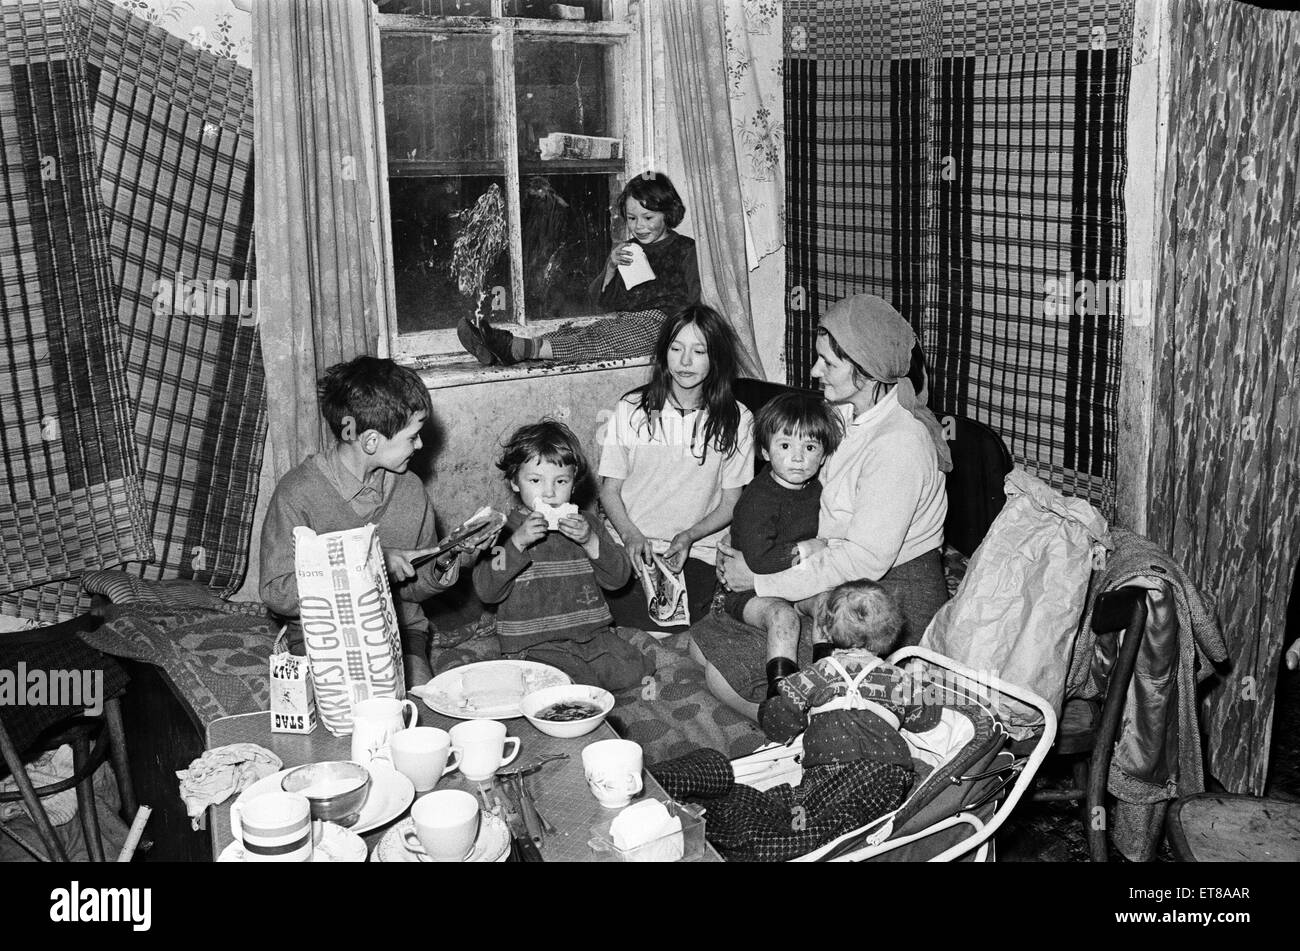 Les bidonvilles, Benburb Street de Dublin, République d'Irlande, 11 mai 1968. Dublin bidonvilles contrôlés par l'autorité municipale, la Dublin Corporation, qui a eu à ignorer les normes d'hygiène et d'assainissement. Sur la photo. Mme Murphy, abandonnée par son mari, a été déplacé dans le bidonville par la société en raison de l'arriéré de loyer de vérification 70. Elle existe avec 10 enfants et sa mère âgée de 85 ans en difficulté dans deux petites cellules dans un immeuble en ruine utilisé comme bloc de billettes de l'armée britannique au 19e siècle. Banque D'Images